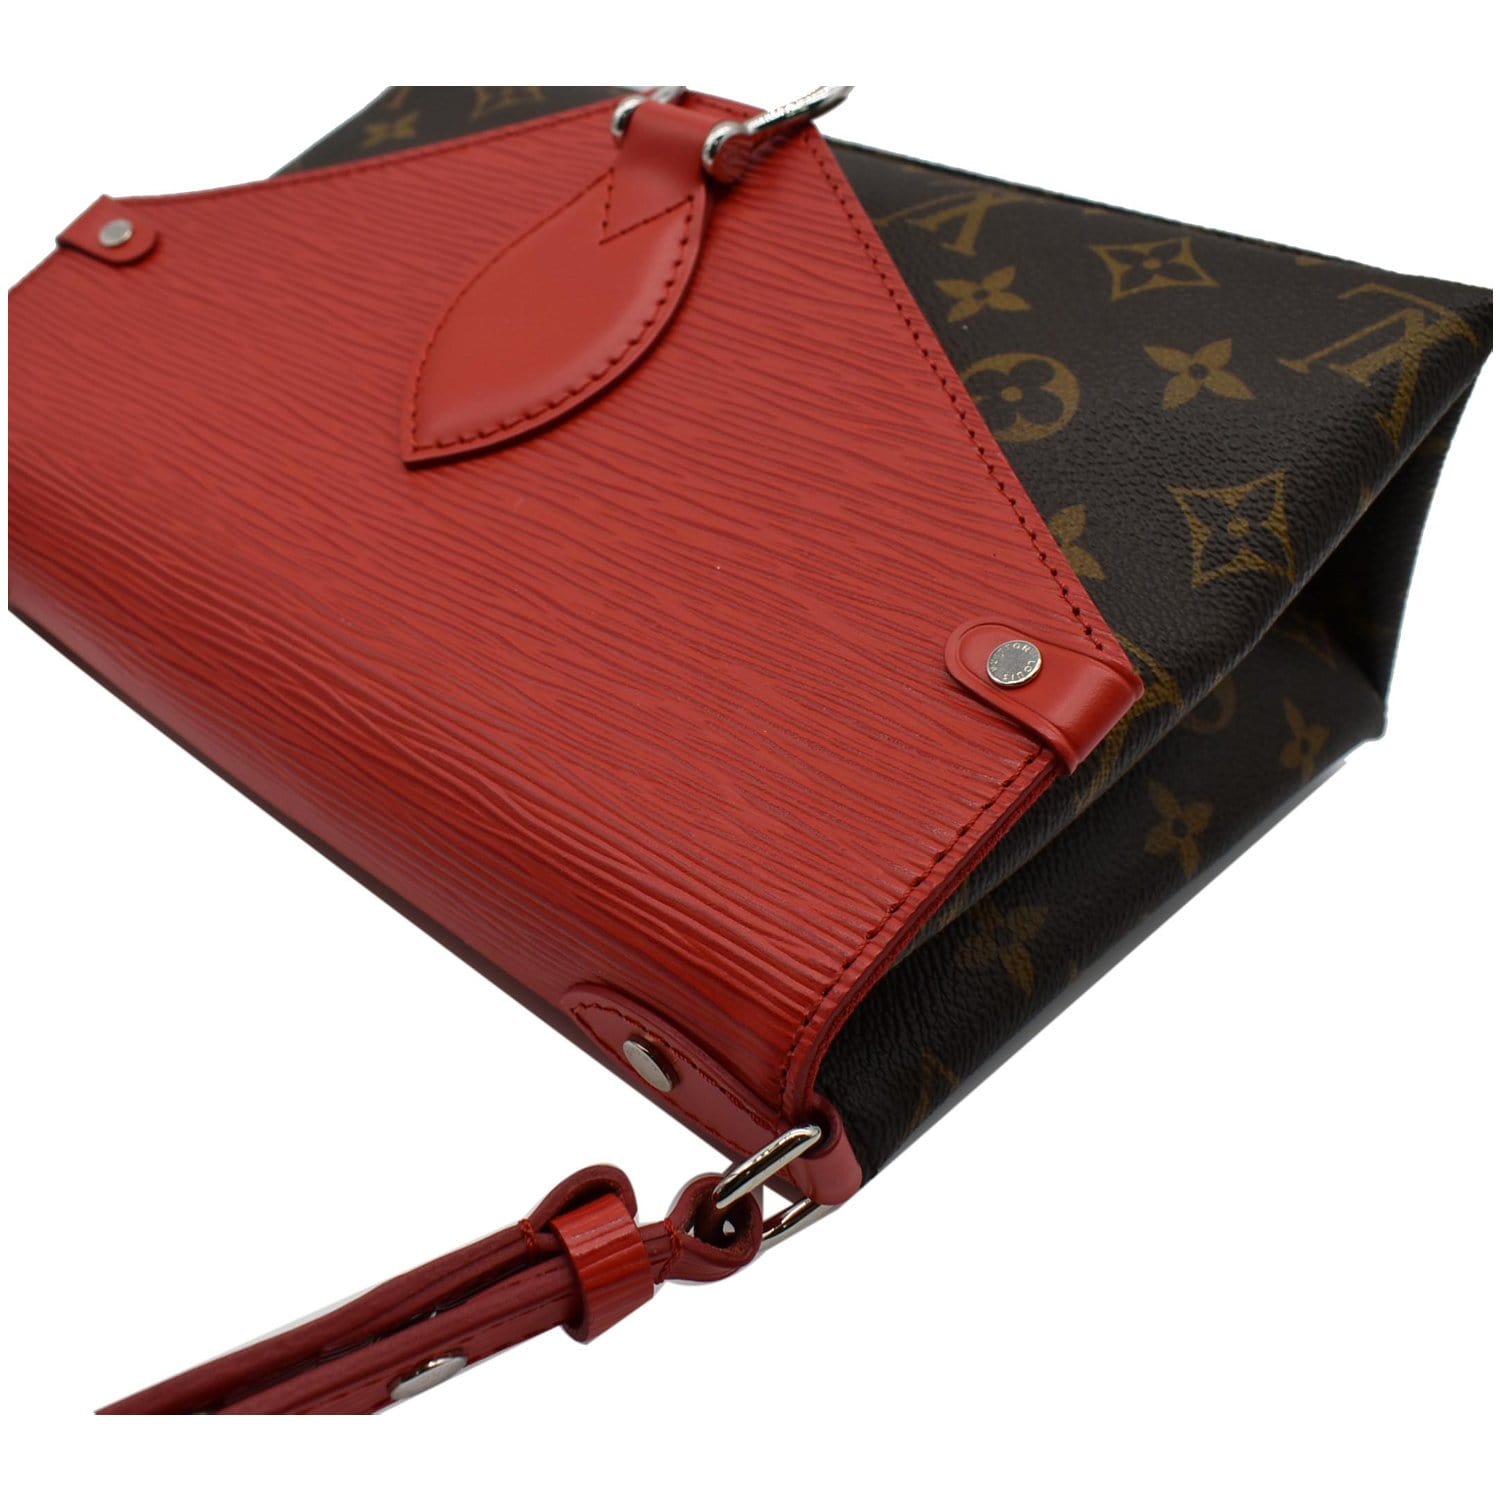 Saint Michel cloth handbag